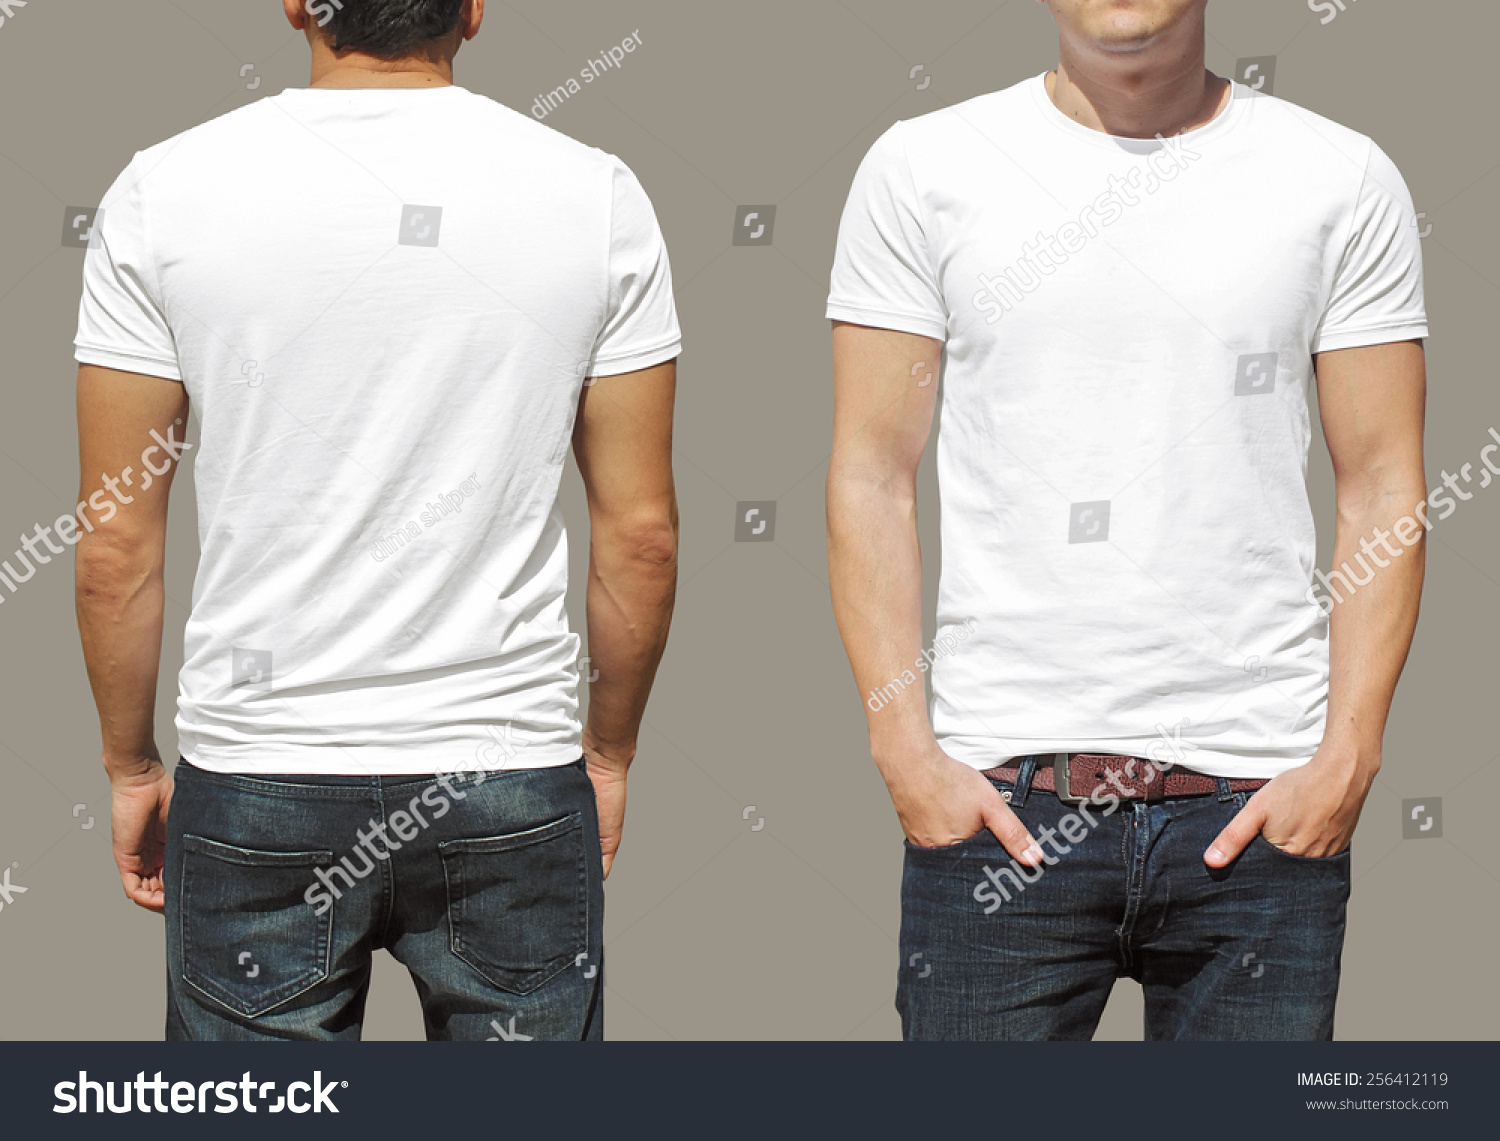 T-Shirt Template Stock Photo 256412119 : Shutterstock